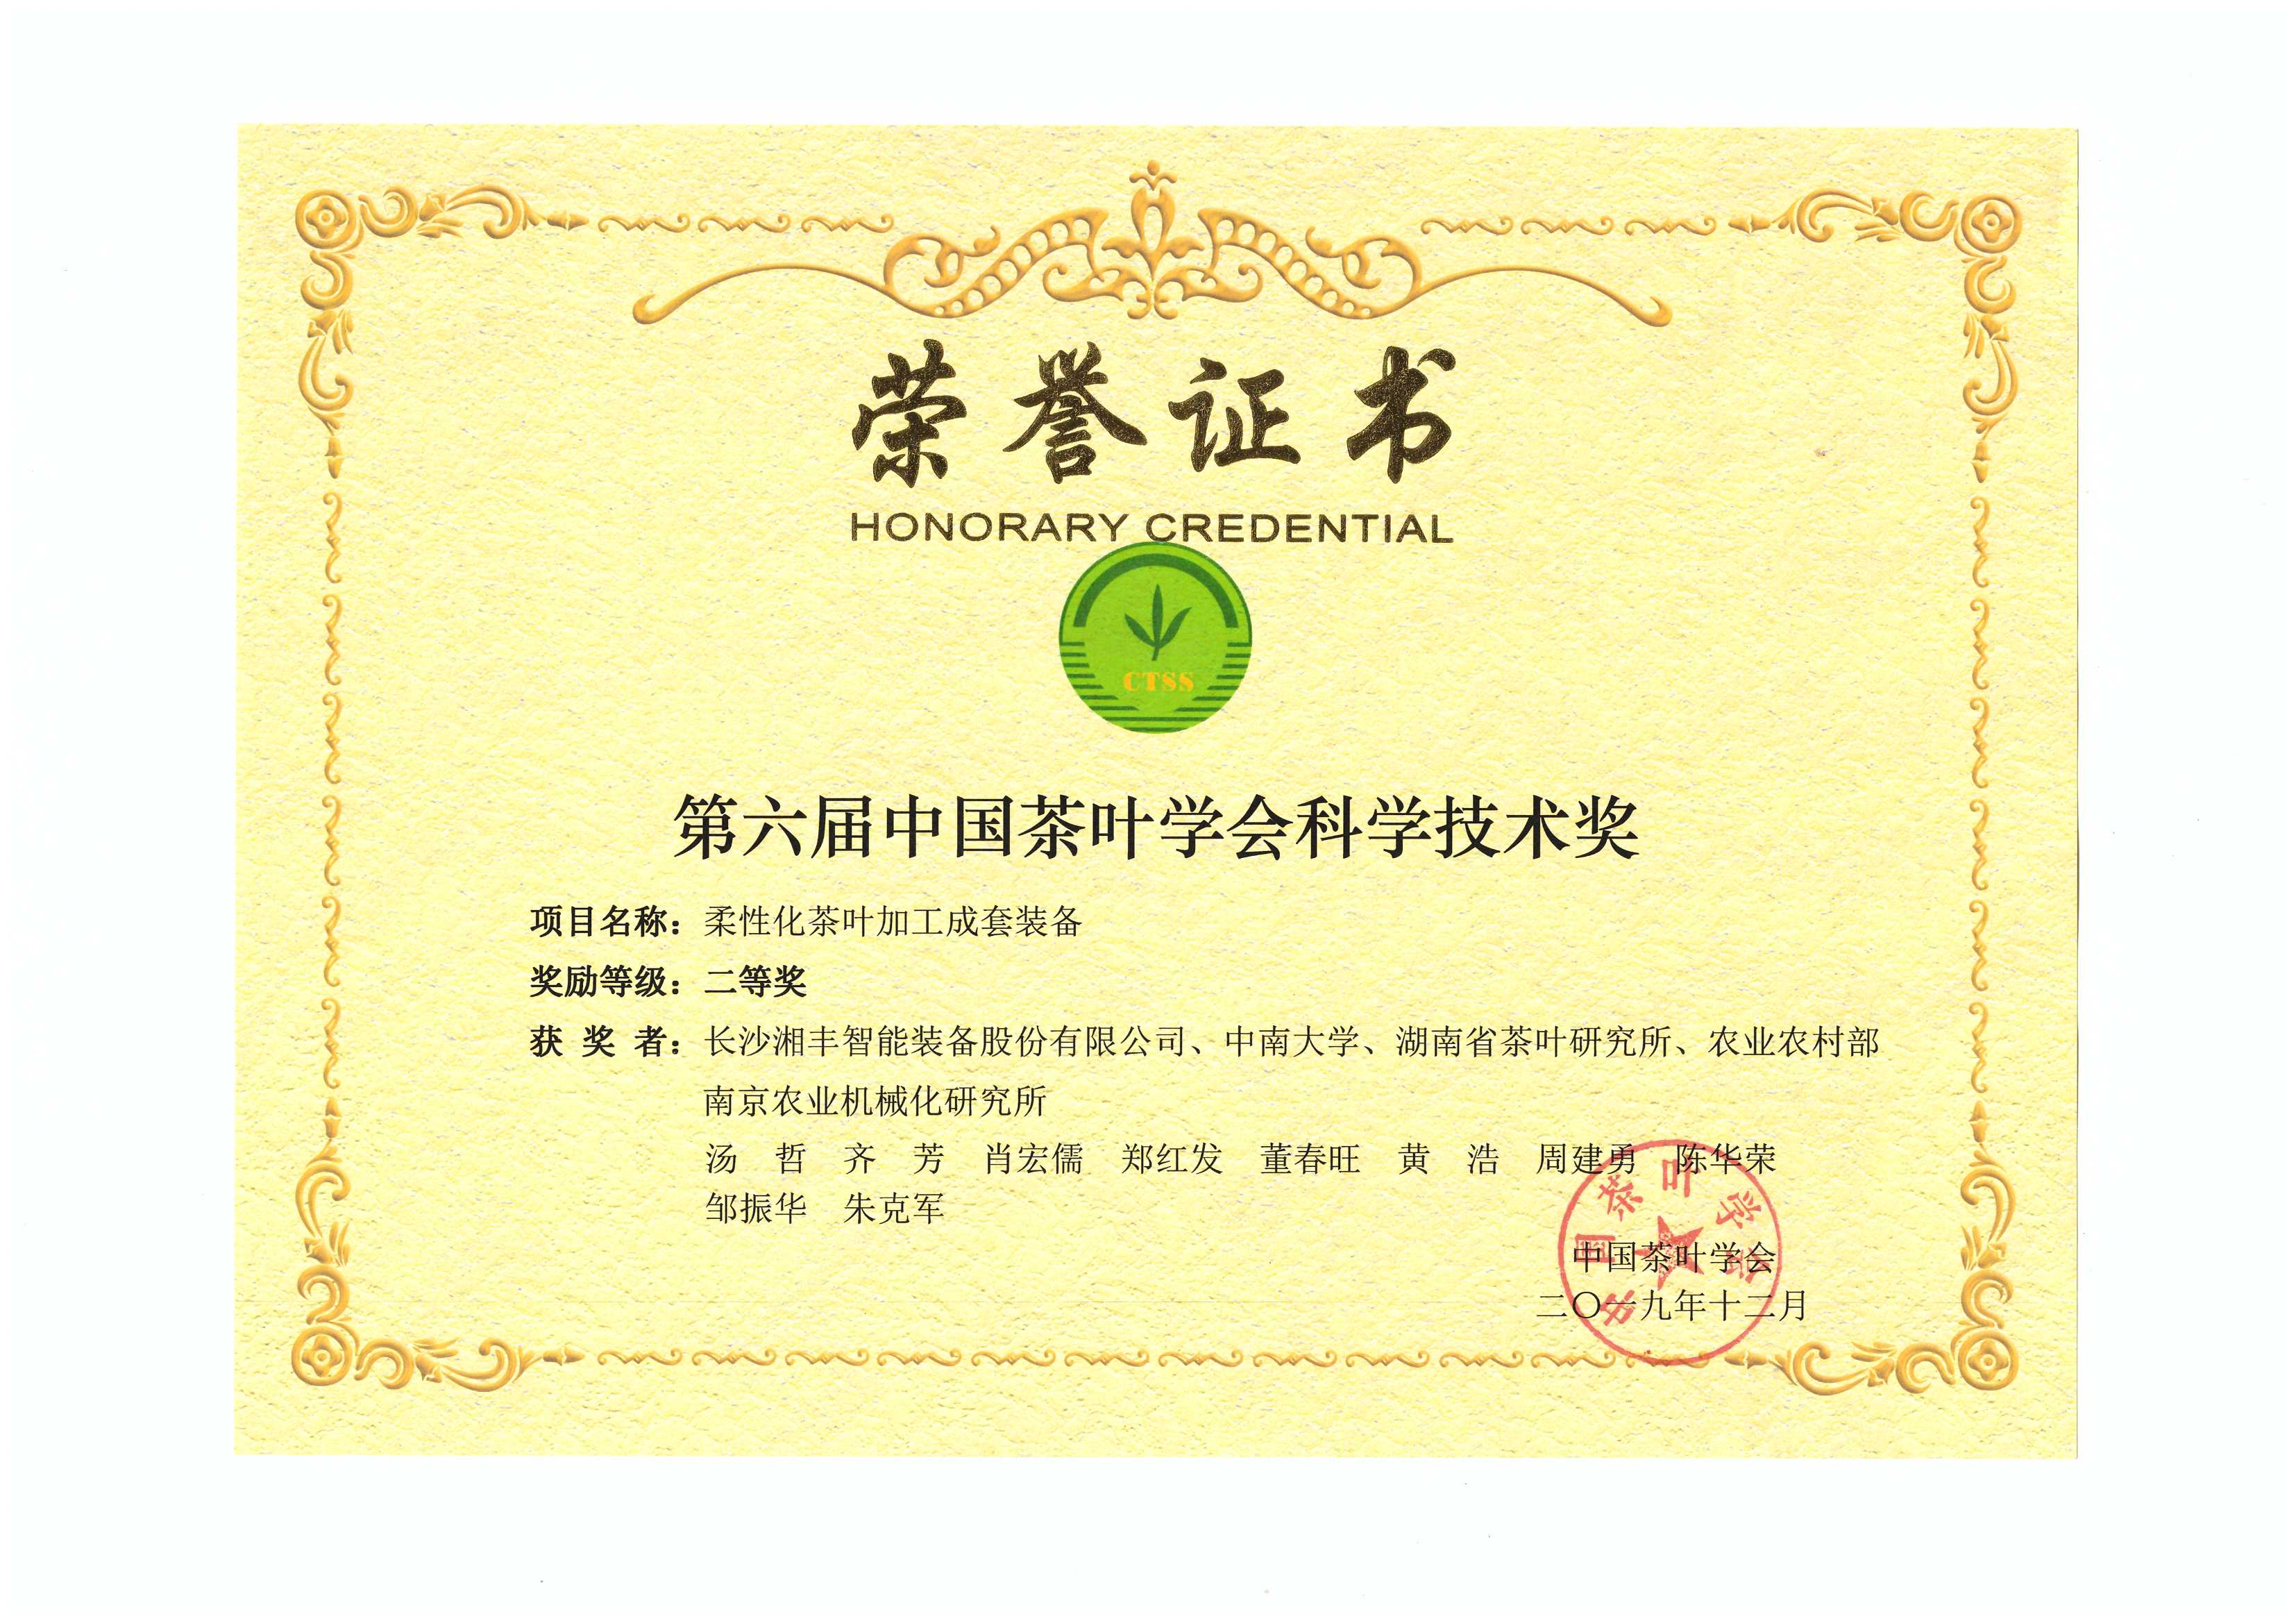 我司“柔性化茶叶加工成套装备”荣获“第六届中国茶叶学会科学技术奖”